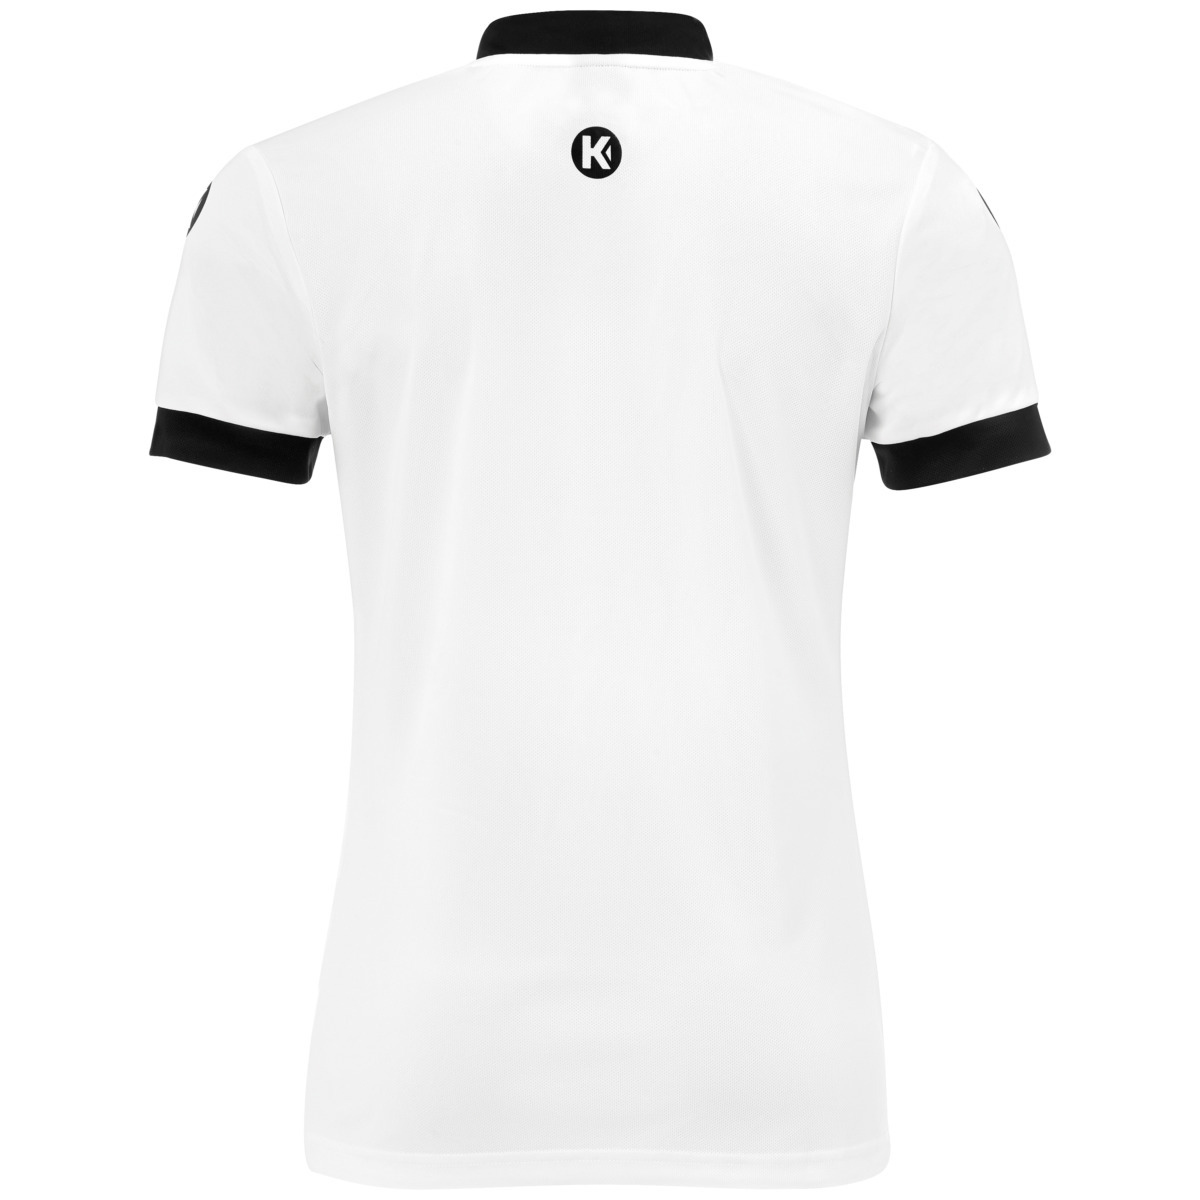 Camiseta Maillot Kempa Player